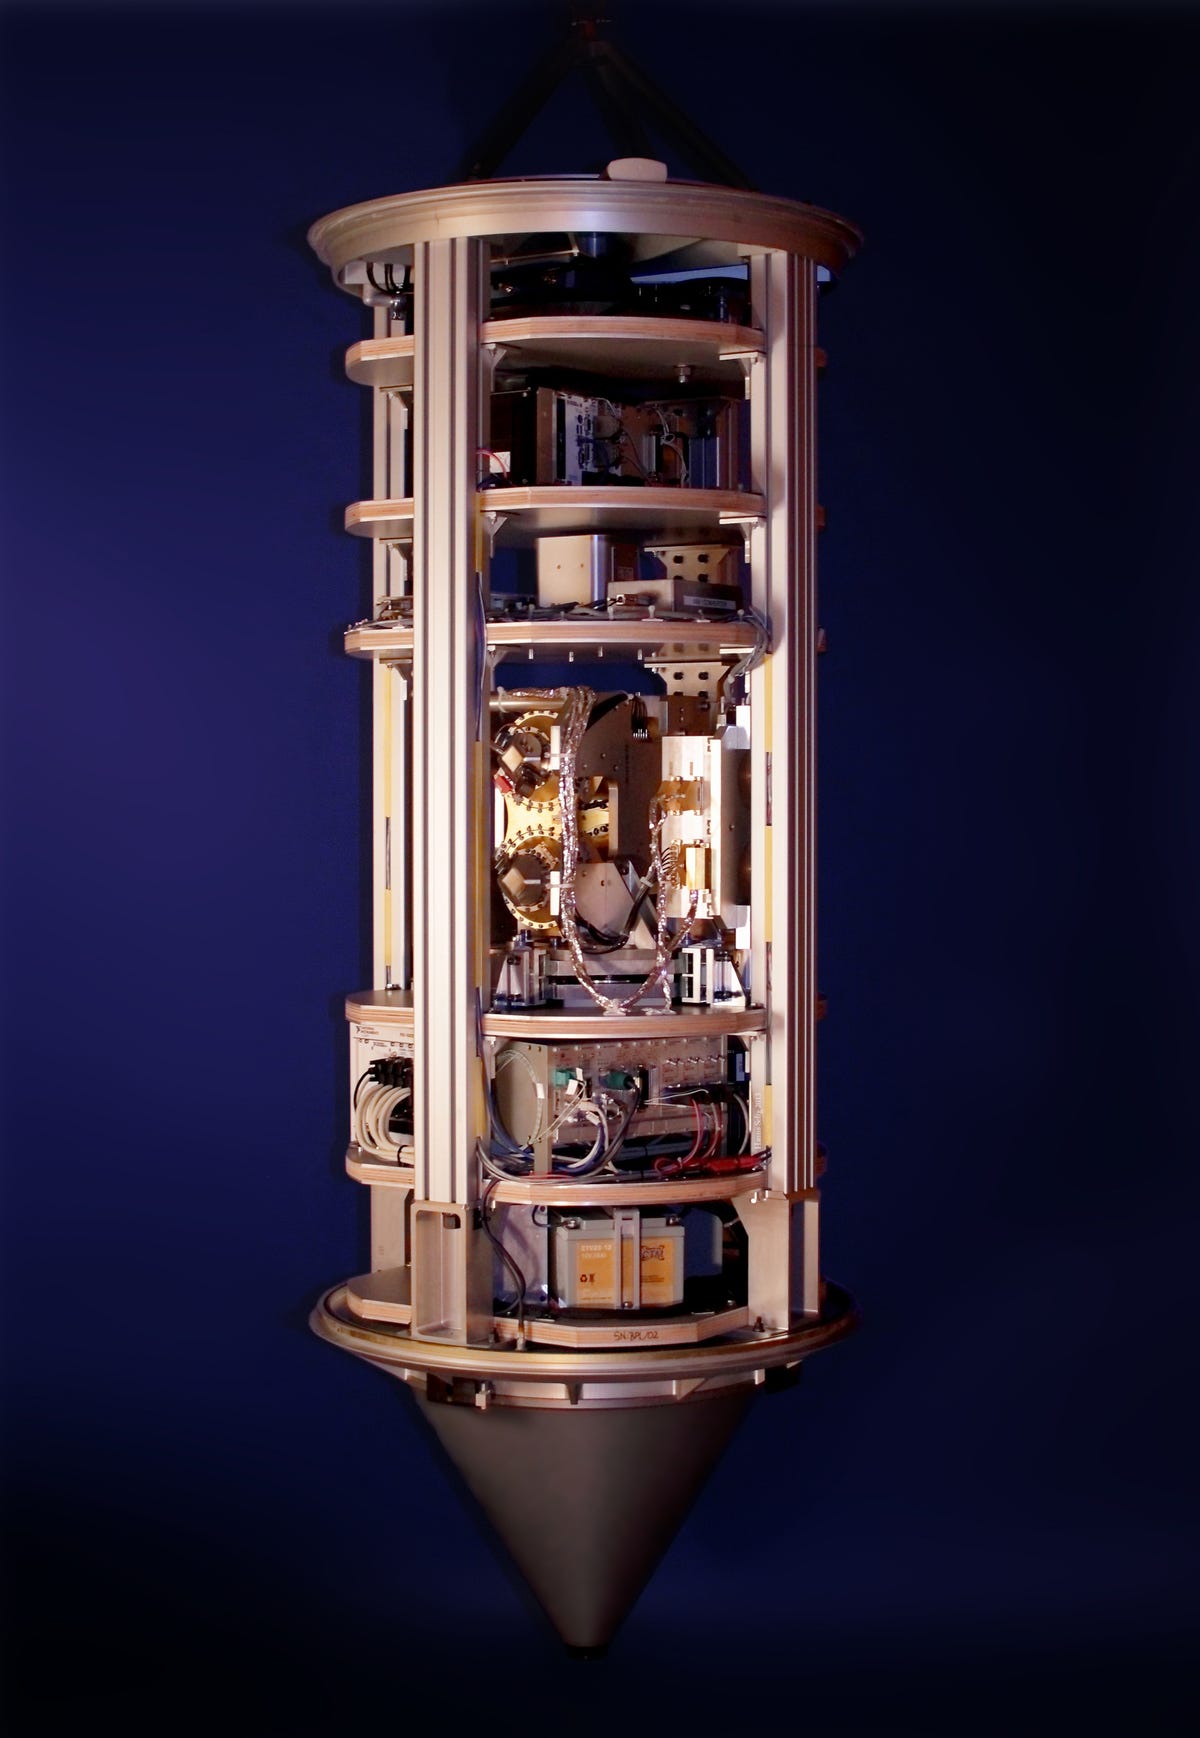 Brązowy cylindryczny korpus zawierający instrumenty naukowe ze spiczastym dnem